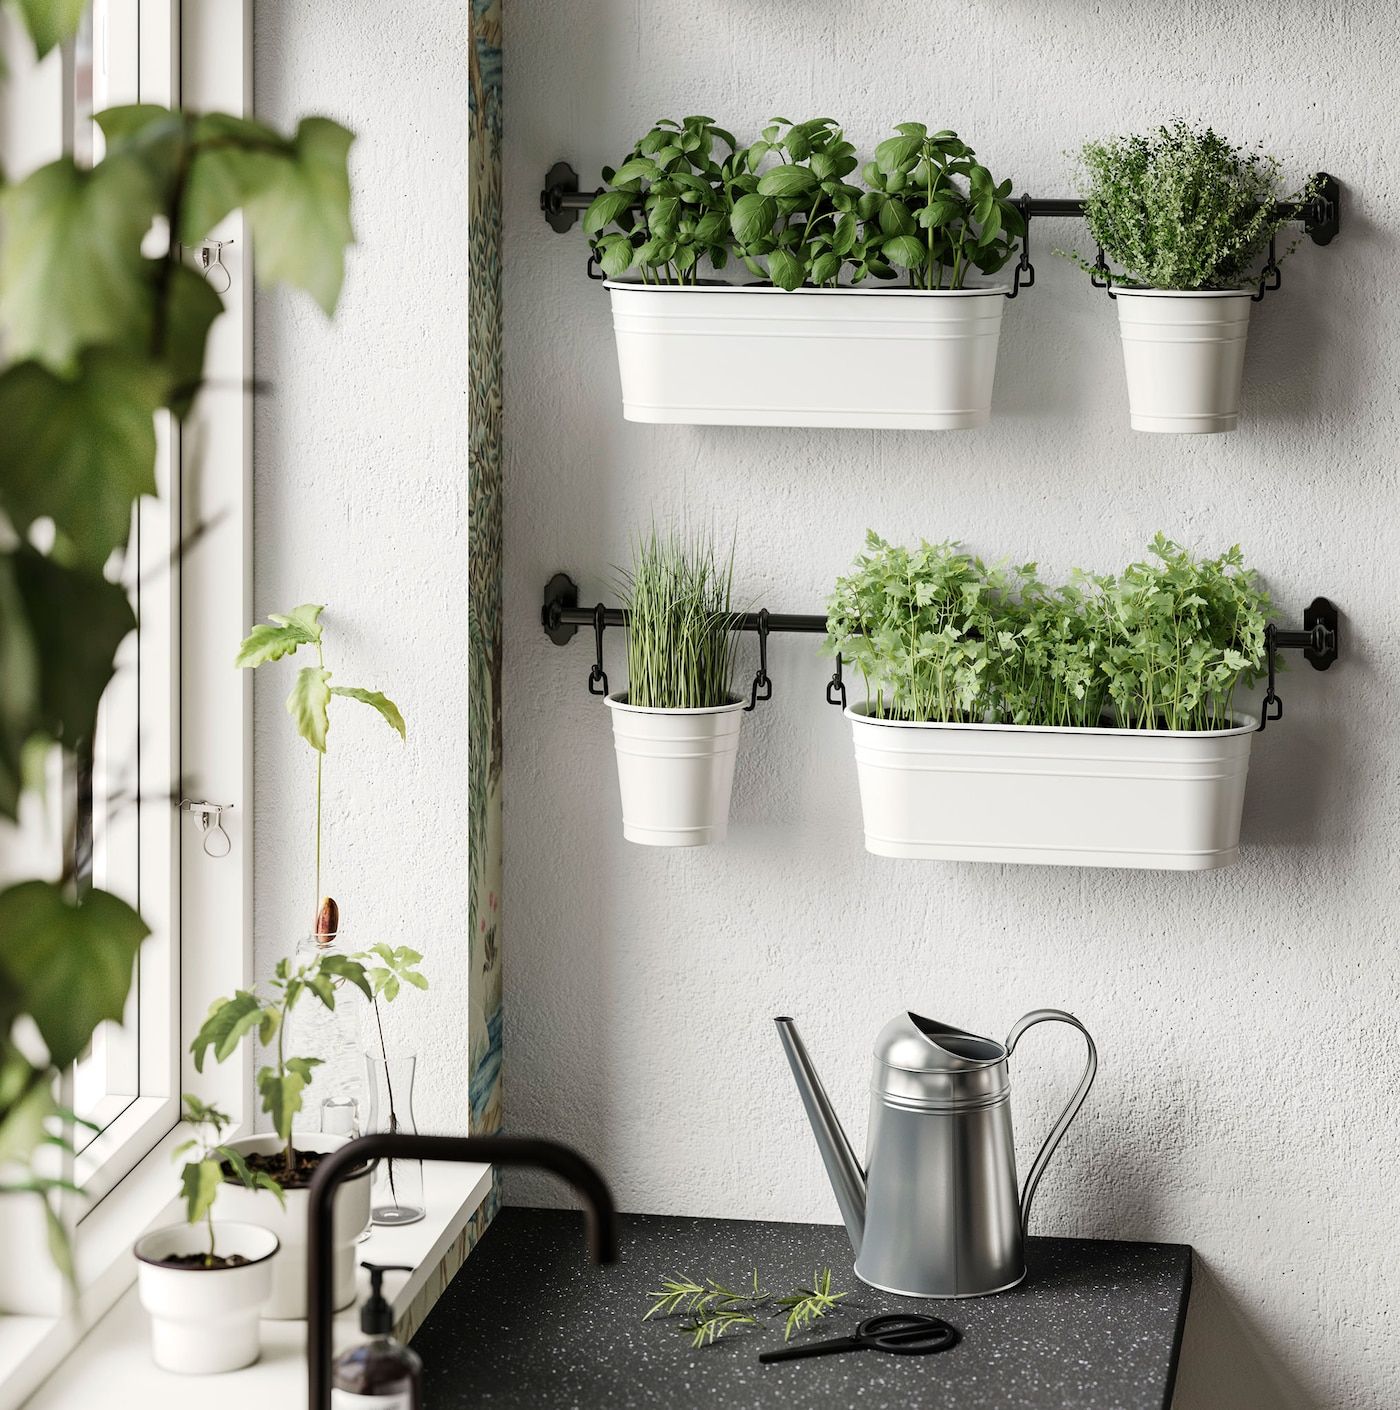 Vertical Garden for Your Kitchen